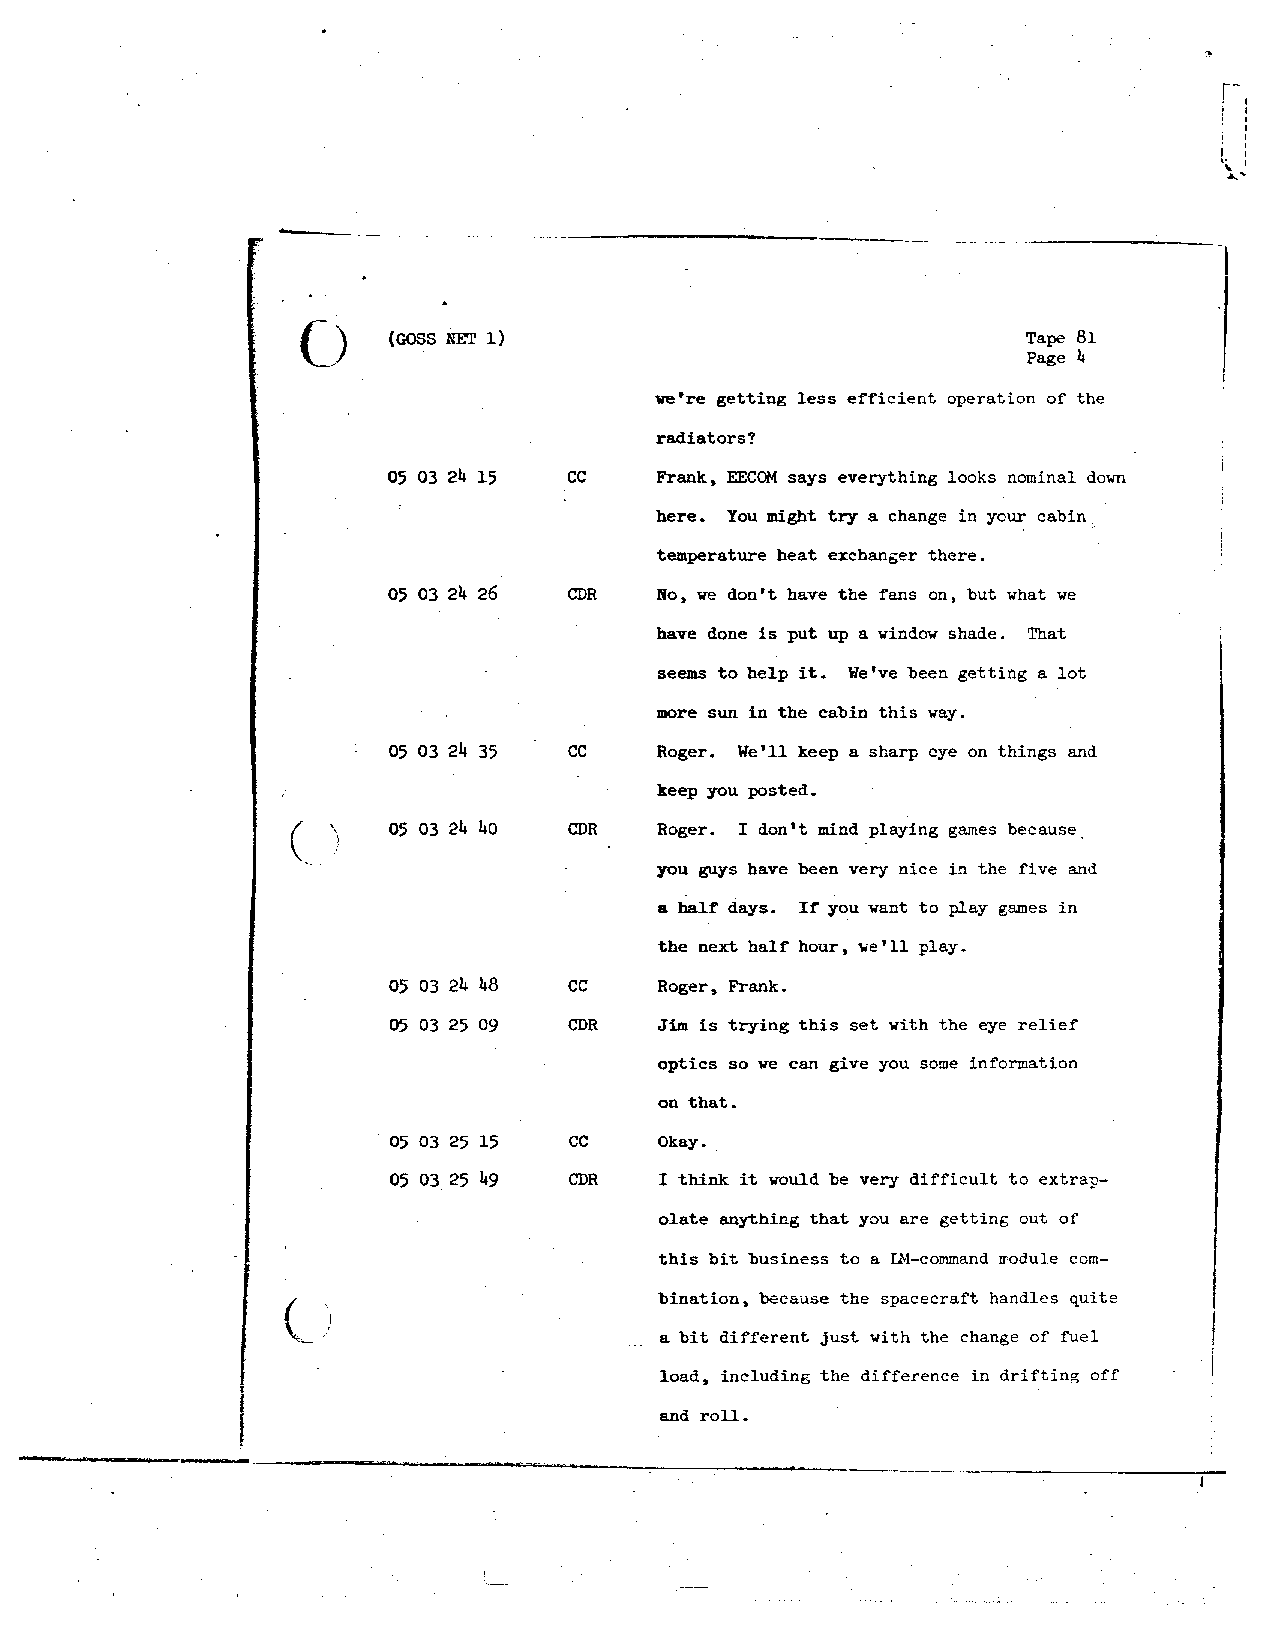 Page 672 of Apollo 8’s original transcript